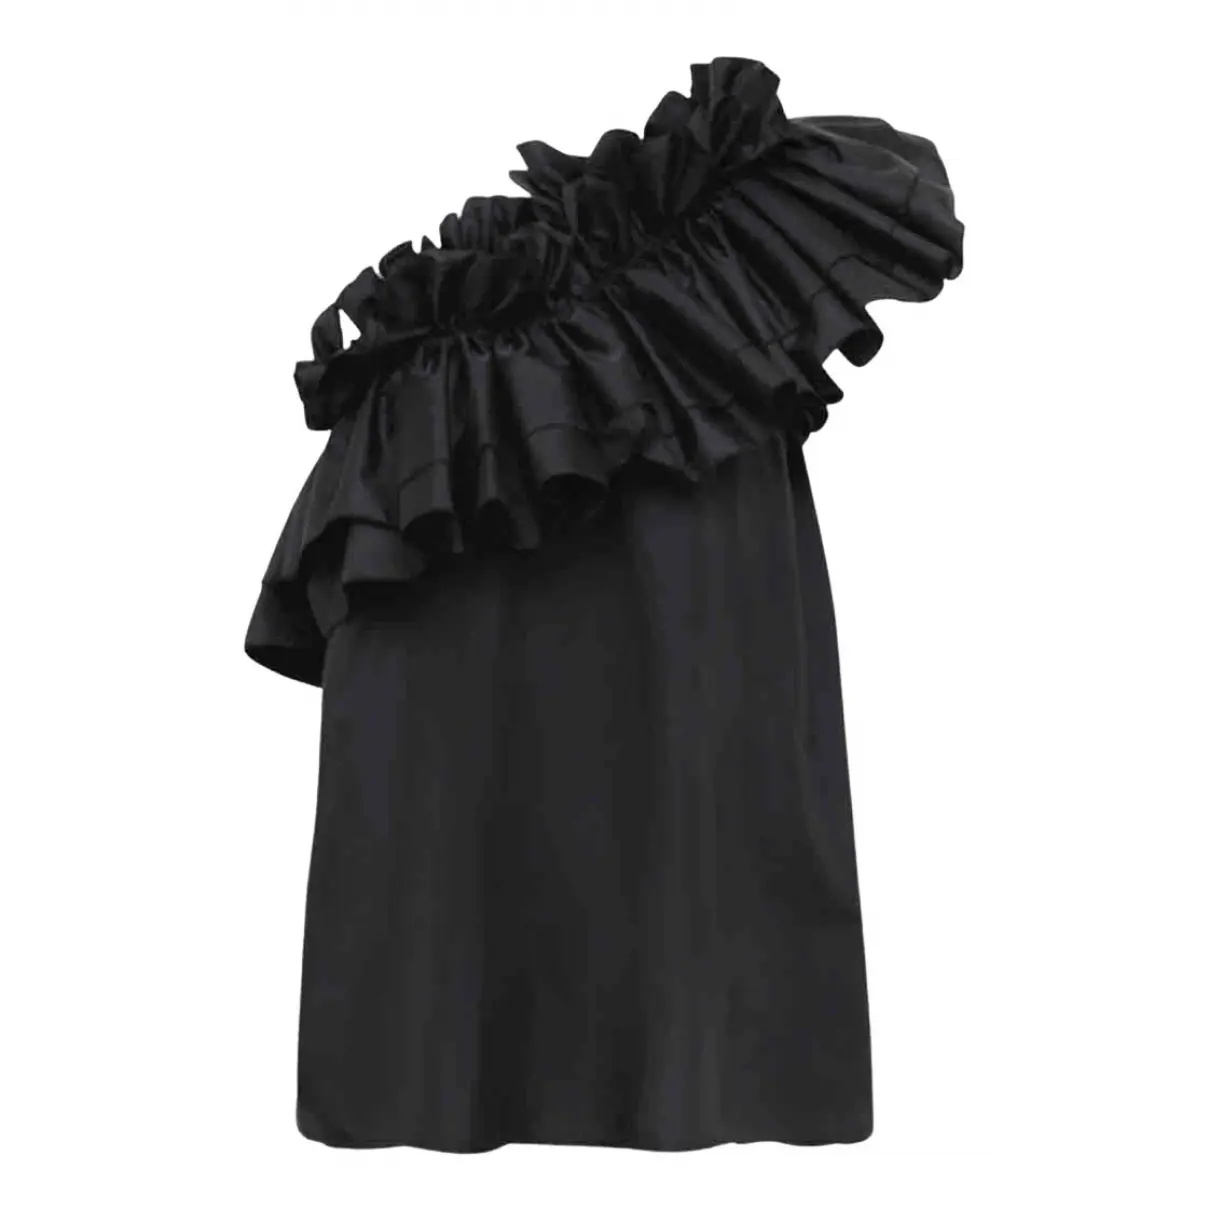 Buy Julie Fagerholt Heartmade Black Polyester Top online